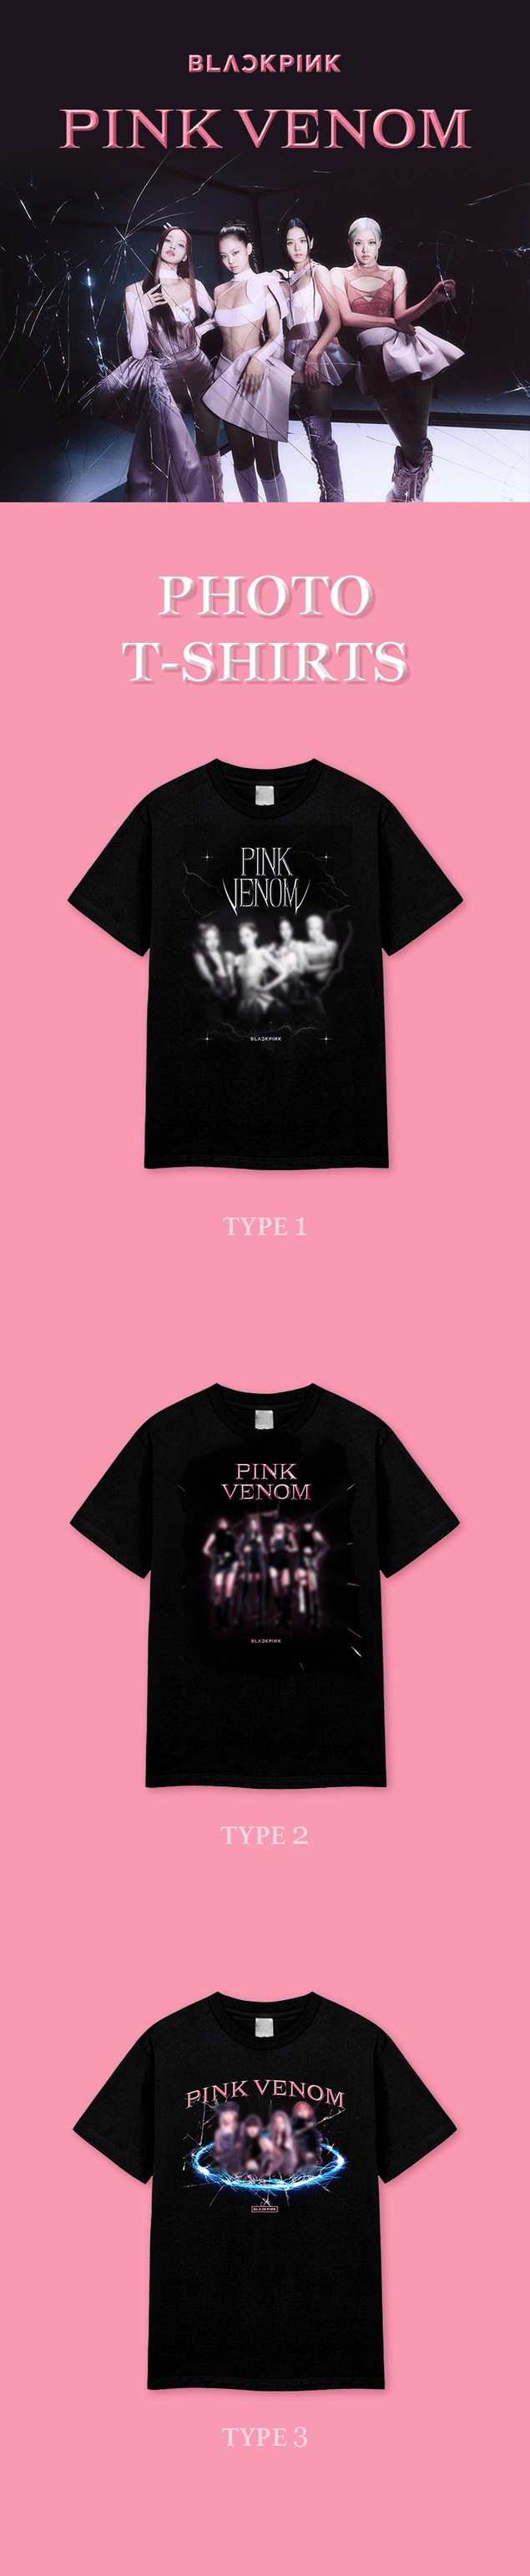 BLACKPINK [Pink Venom] قمصان للصور